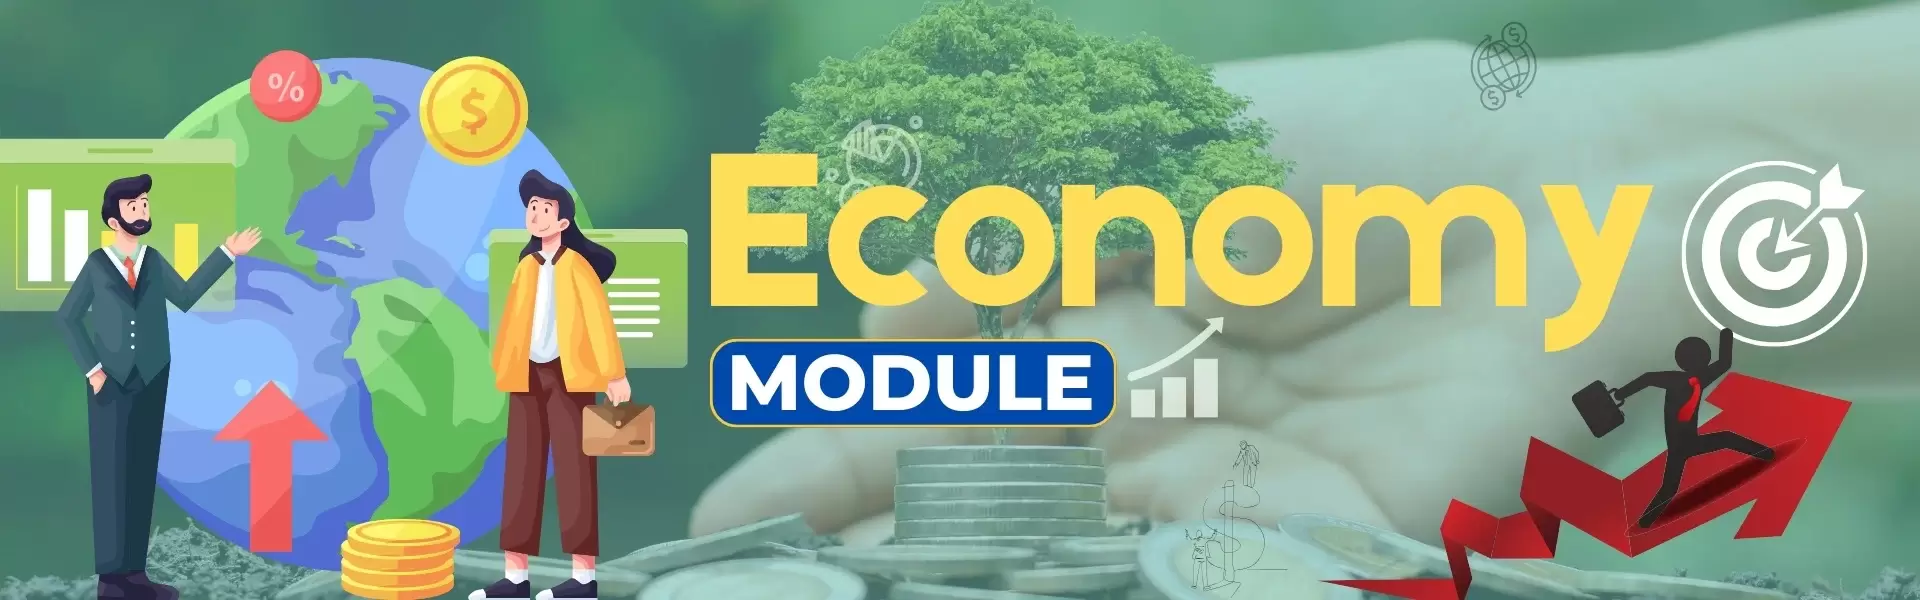 Economy Module